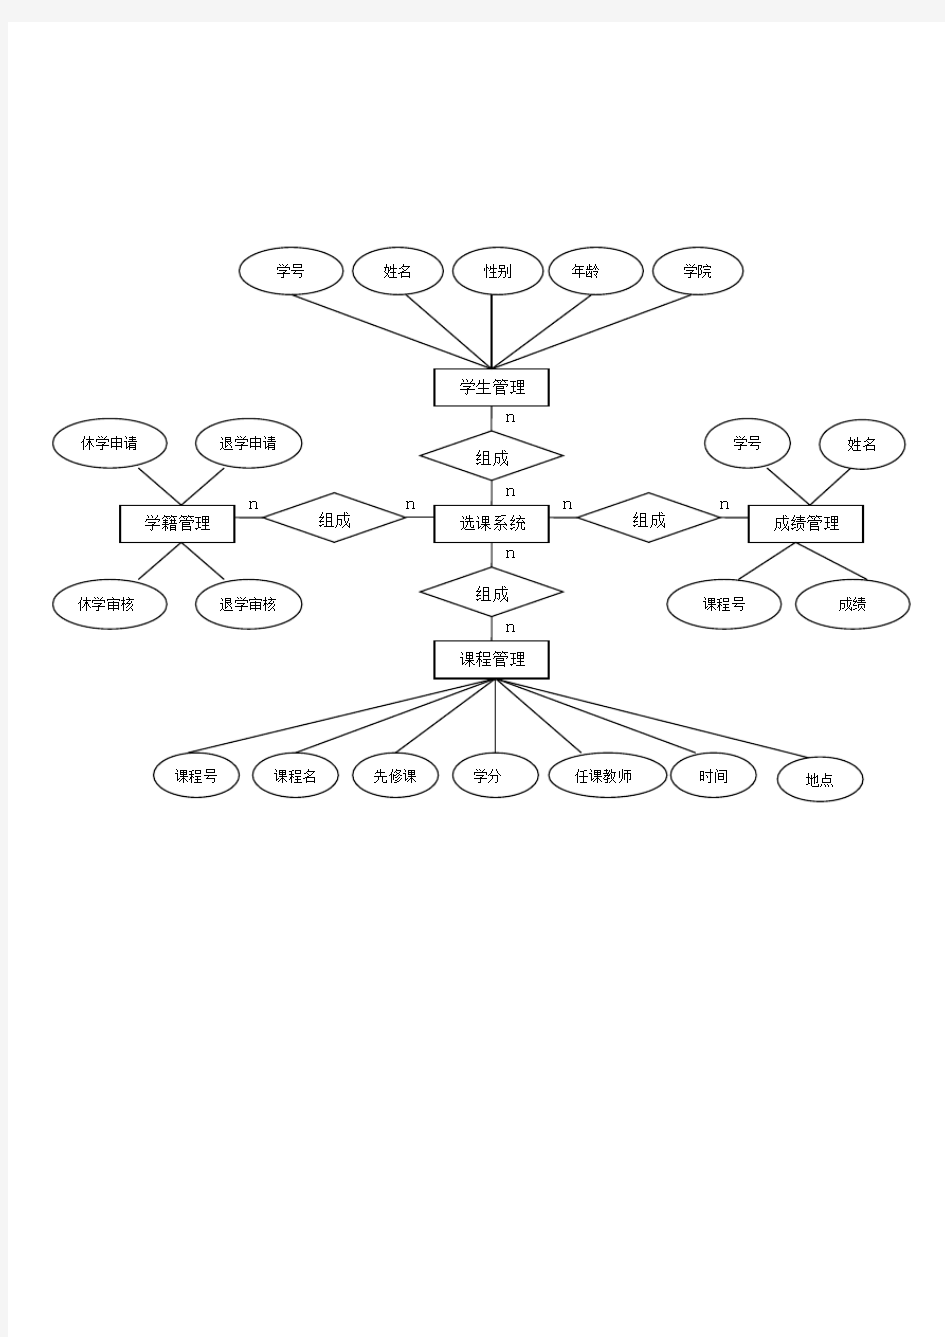 选课系统结构图